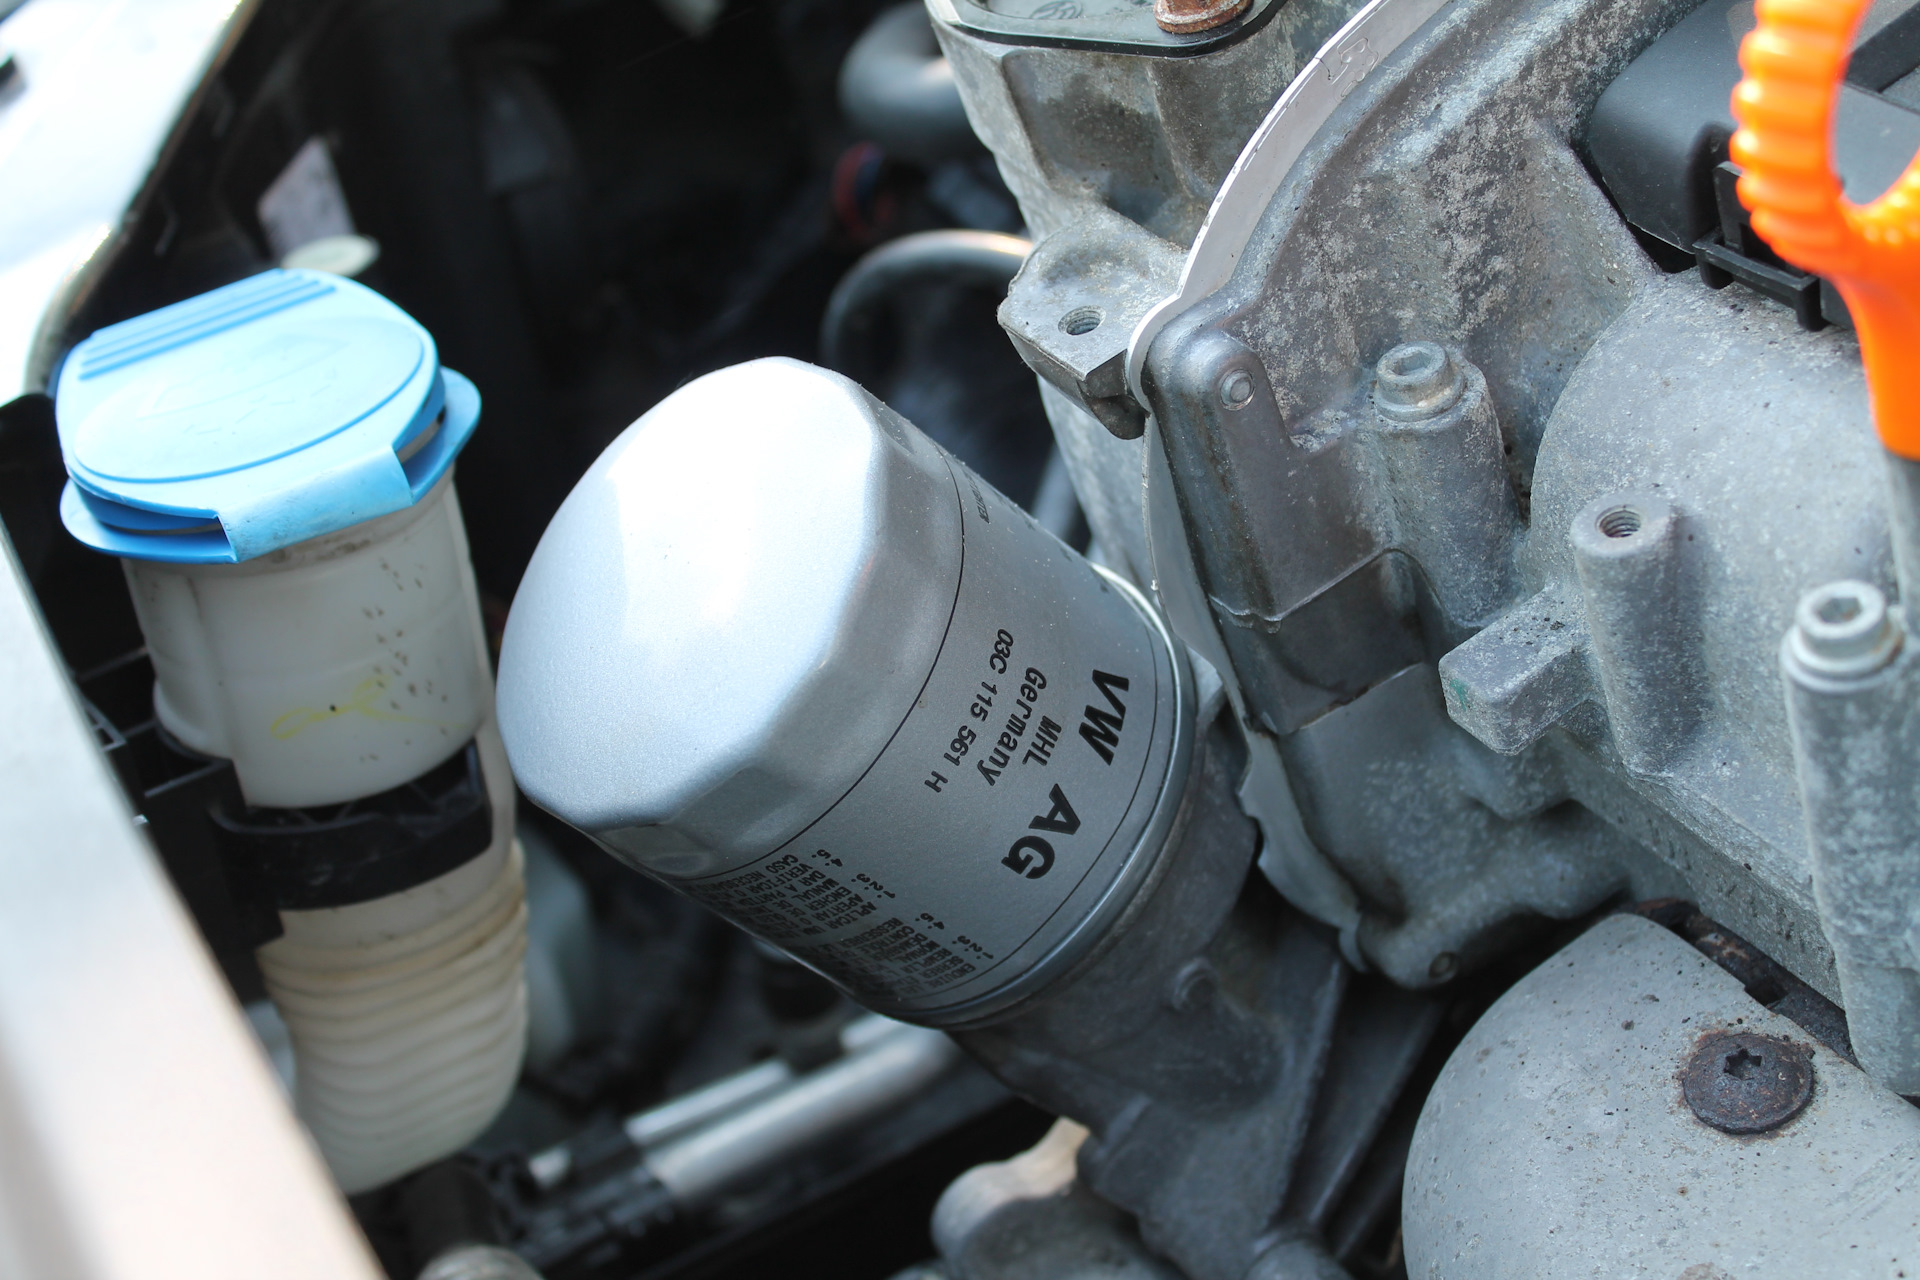 Фольксваген поло сколько литров масла. Фольксваген поло масляный фильтр в моторе. Замена масла Фольксваген поло седан 1.6. Фильтр масляный Фольксваген поло седан 1.6 110 л.с. VW Polo 2010 1.6 моторное масло.